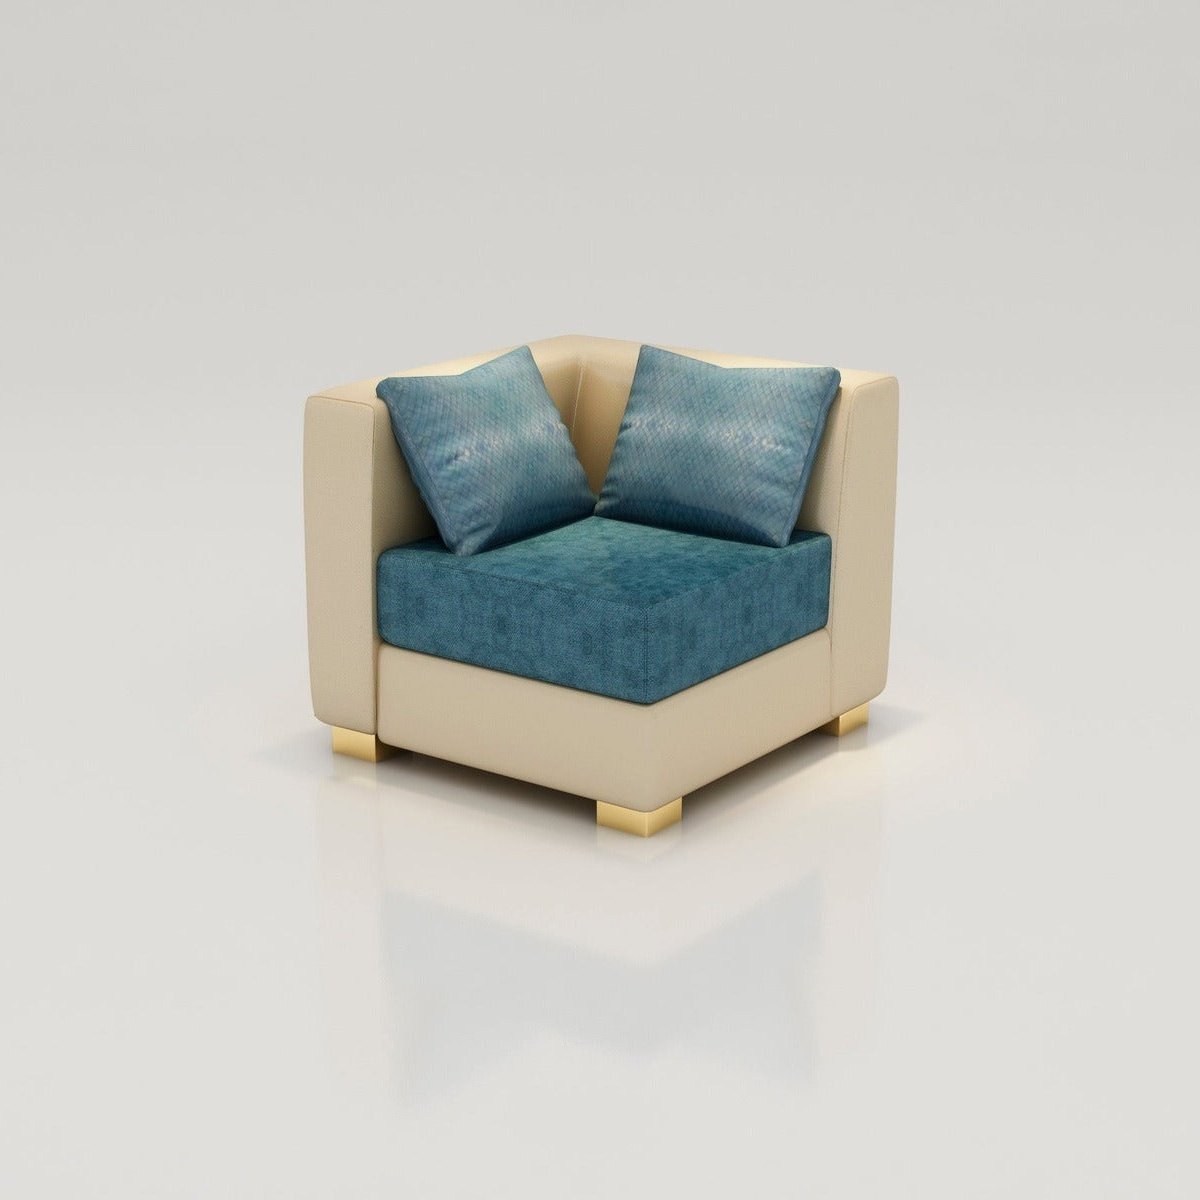 VR 175 DENMARK L-SHAPE SOFA SET Mobel Furniture